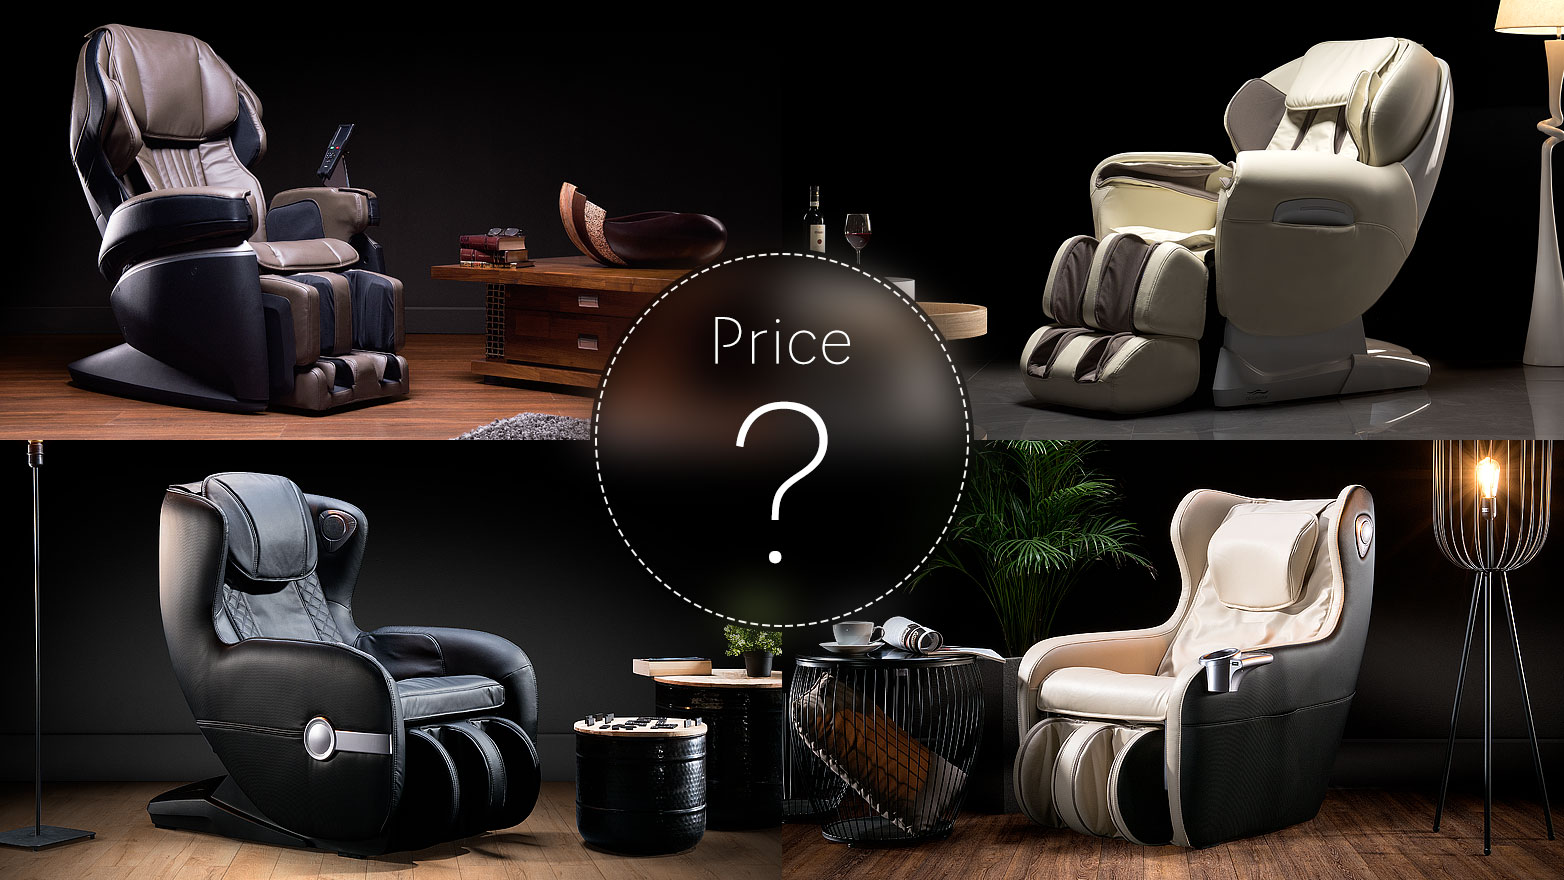 Massage chair price 2020